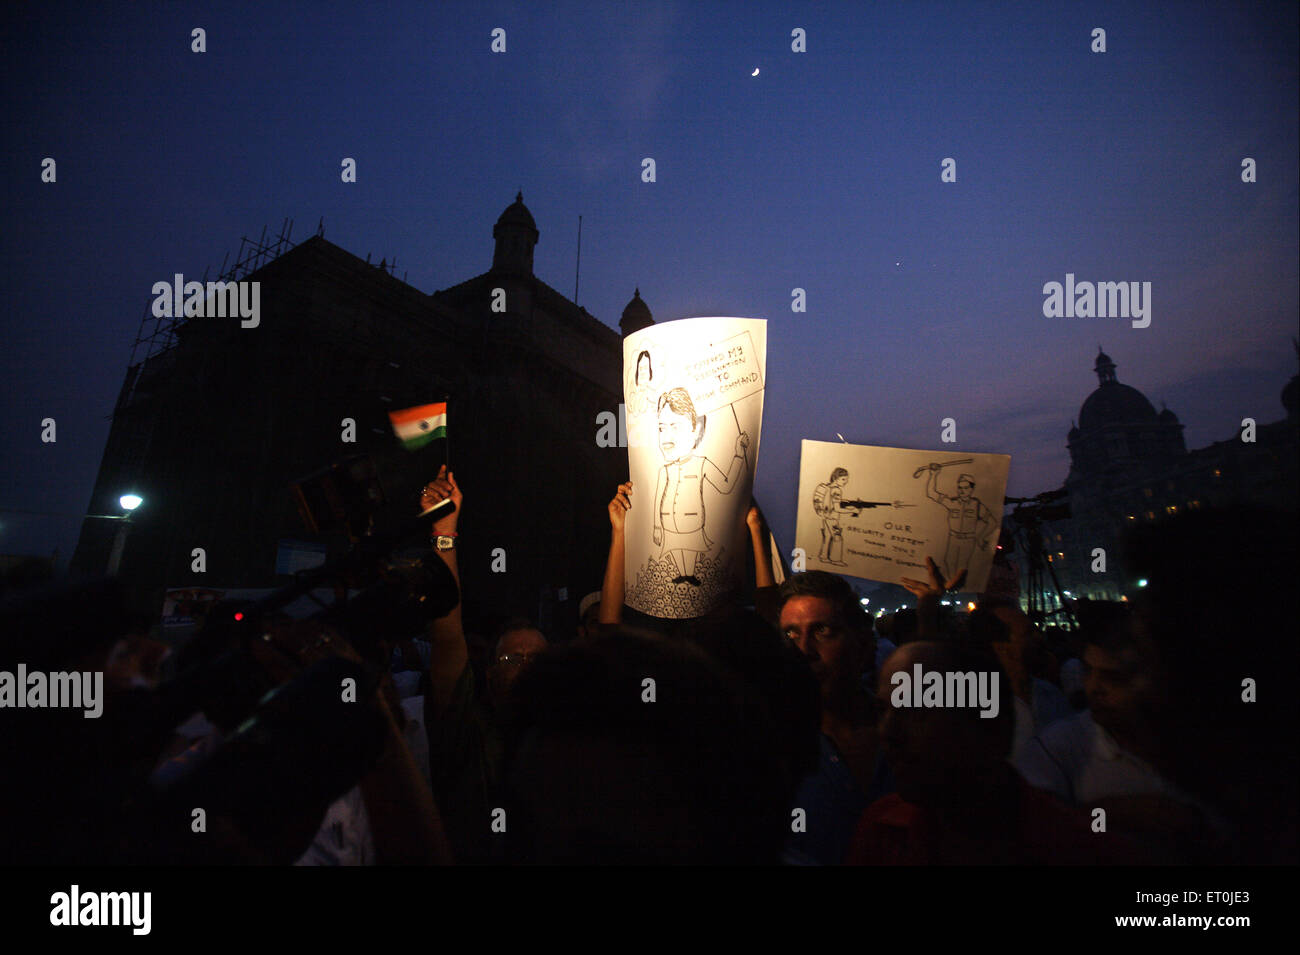 Personas sosteniendo pancarta caricaturas ministro jefe de Maharashtra Vilasrao Deshmukh protesta atentado terrorista perpetrado el 26 de noviembre de 2008 Bombay Foto de stock